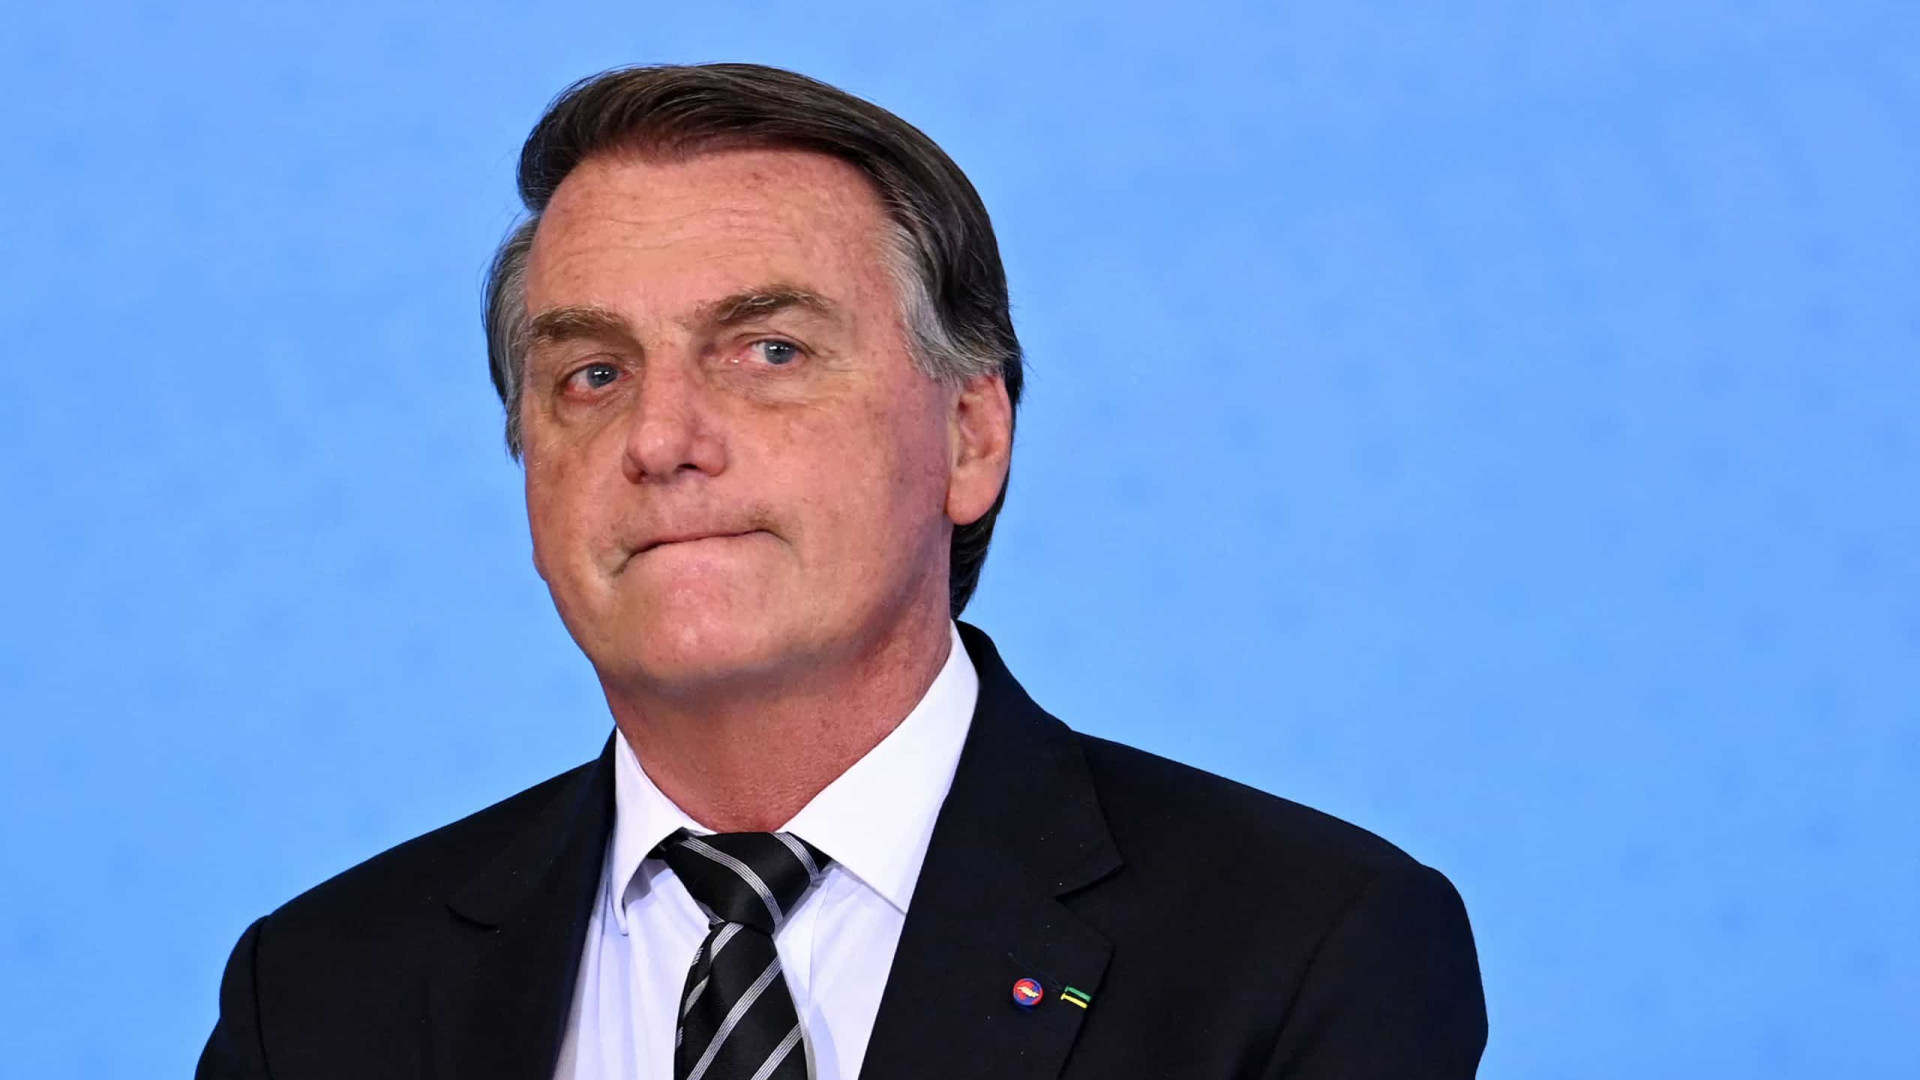 Bolsonaro insiste em CPI da Petrobras, e Congresso começa a colher assinaturas